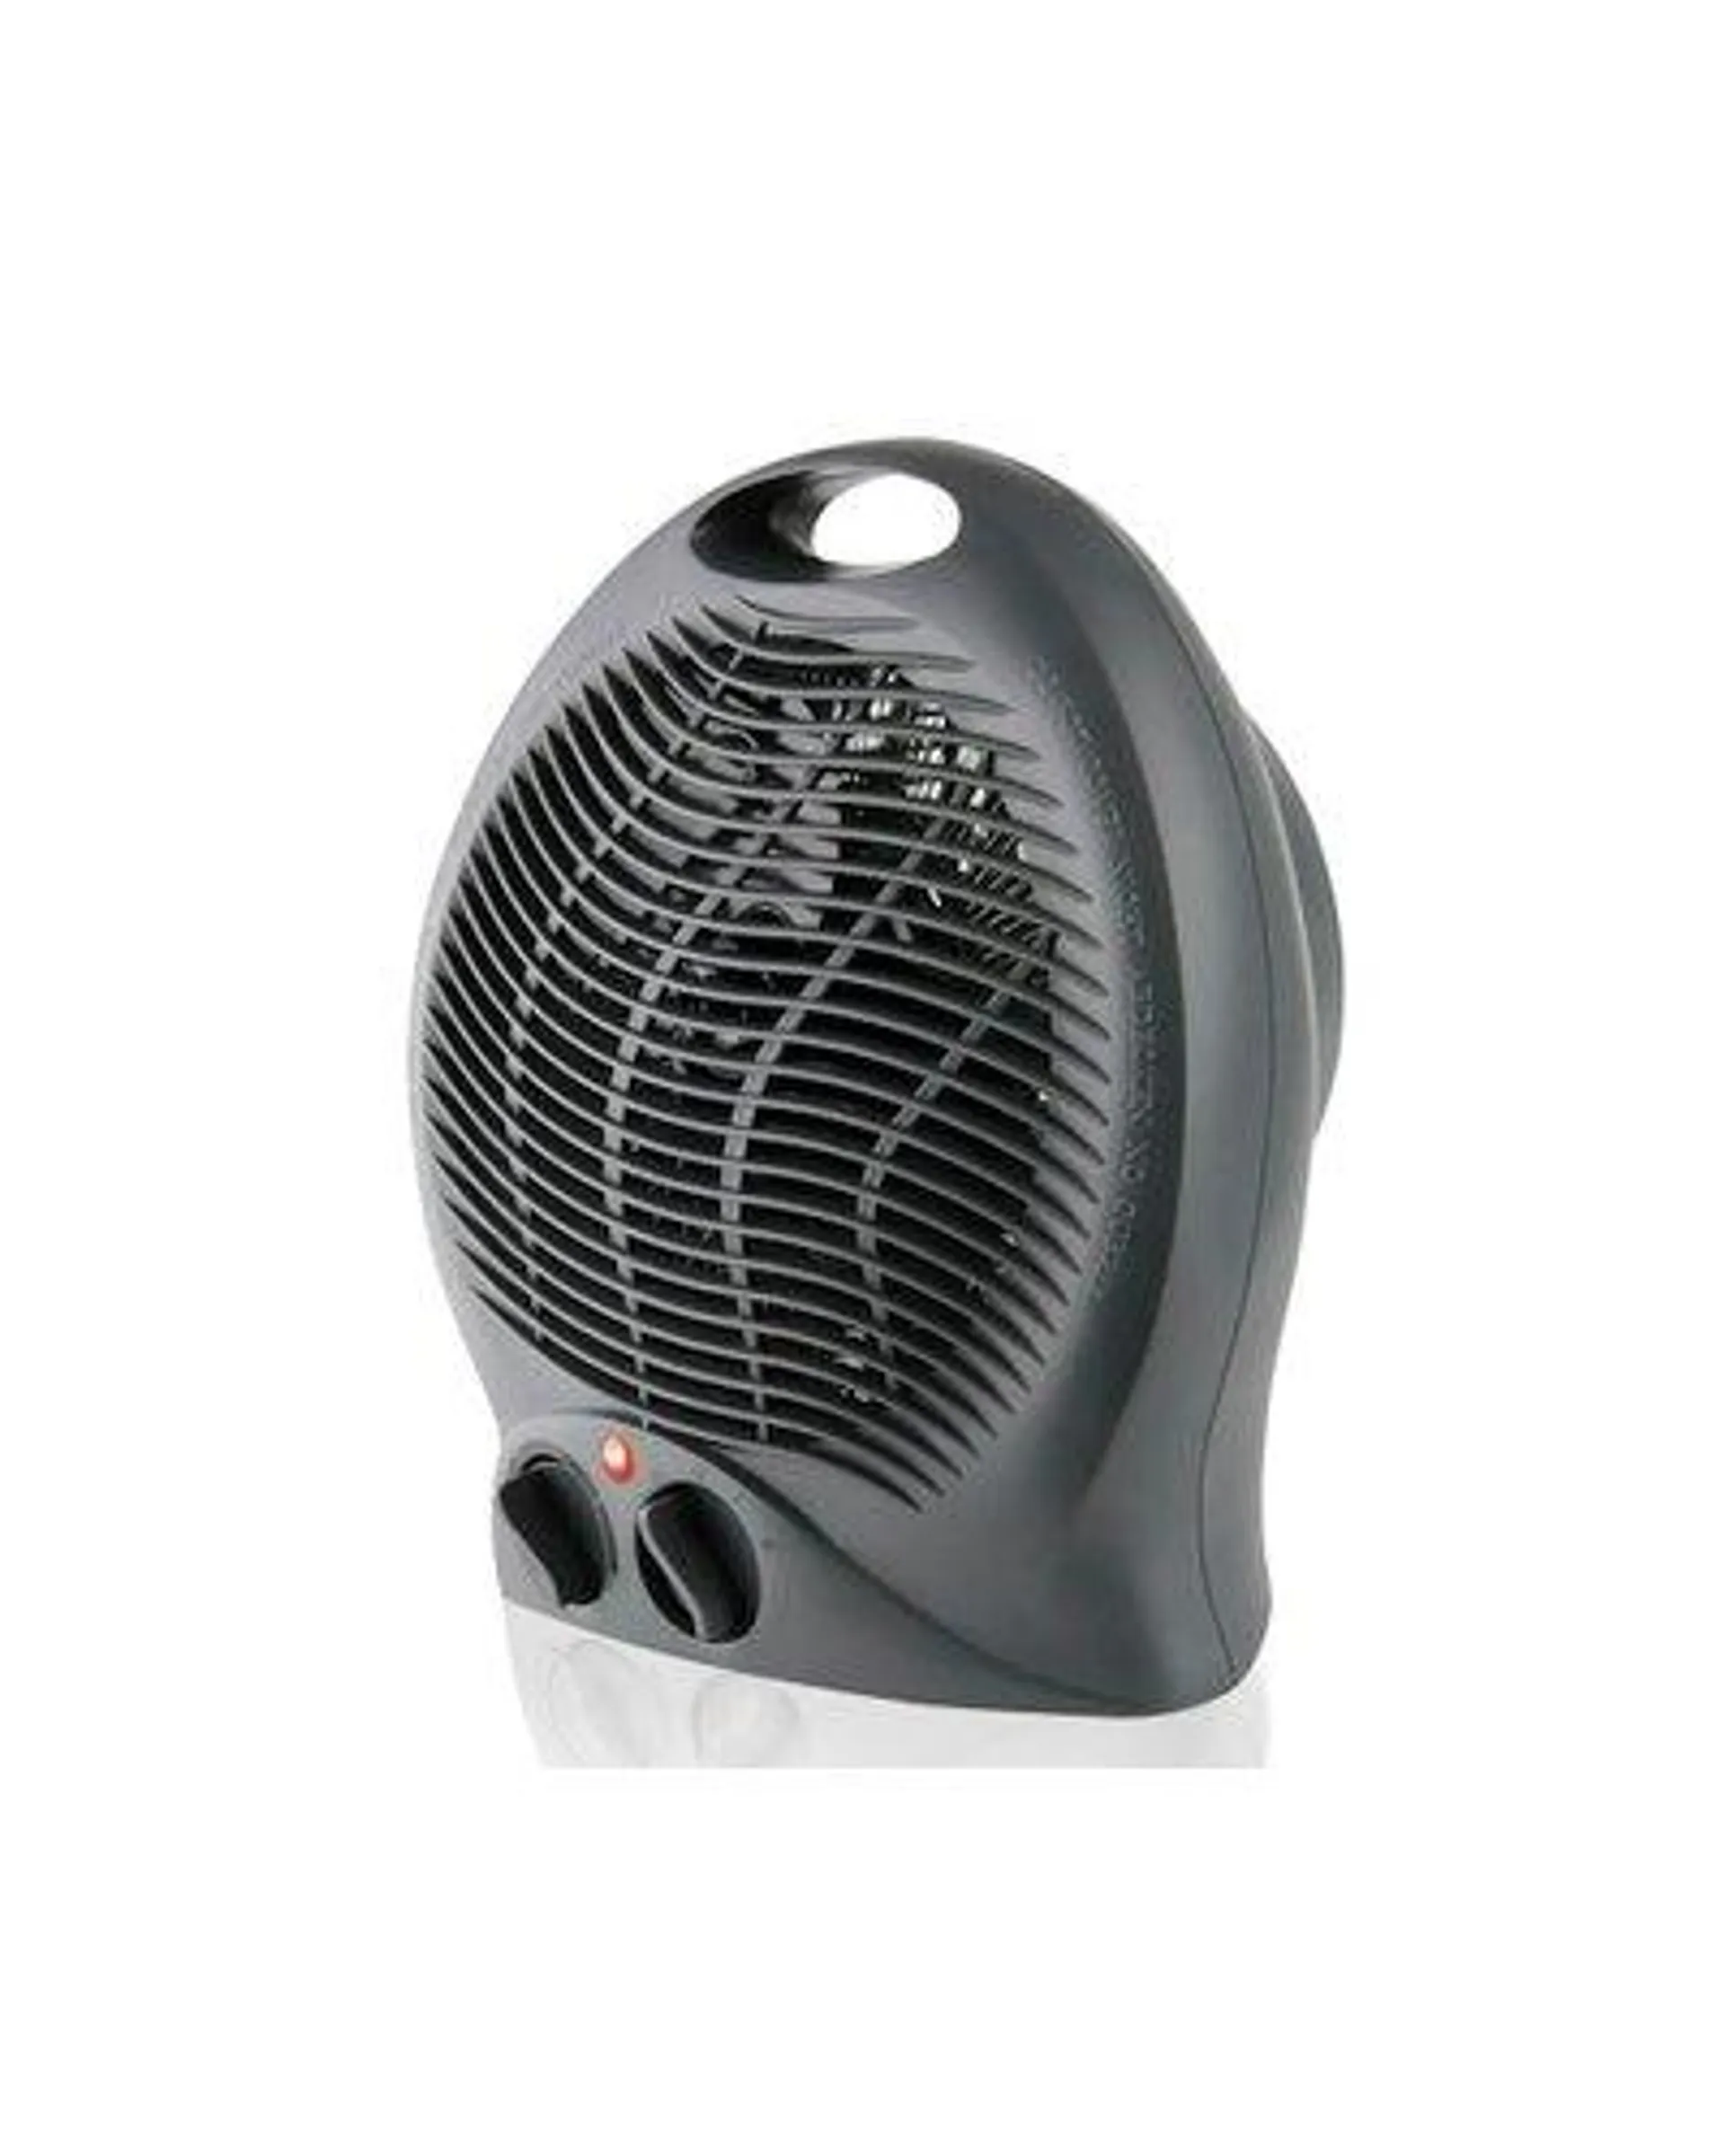 Mellerware Swiss - Plastic Floor Fan Heater with 2 Heat Settings (2000W)(Graphite)